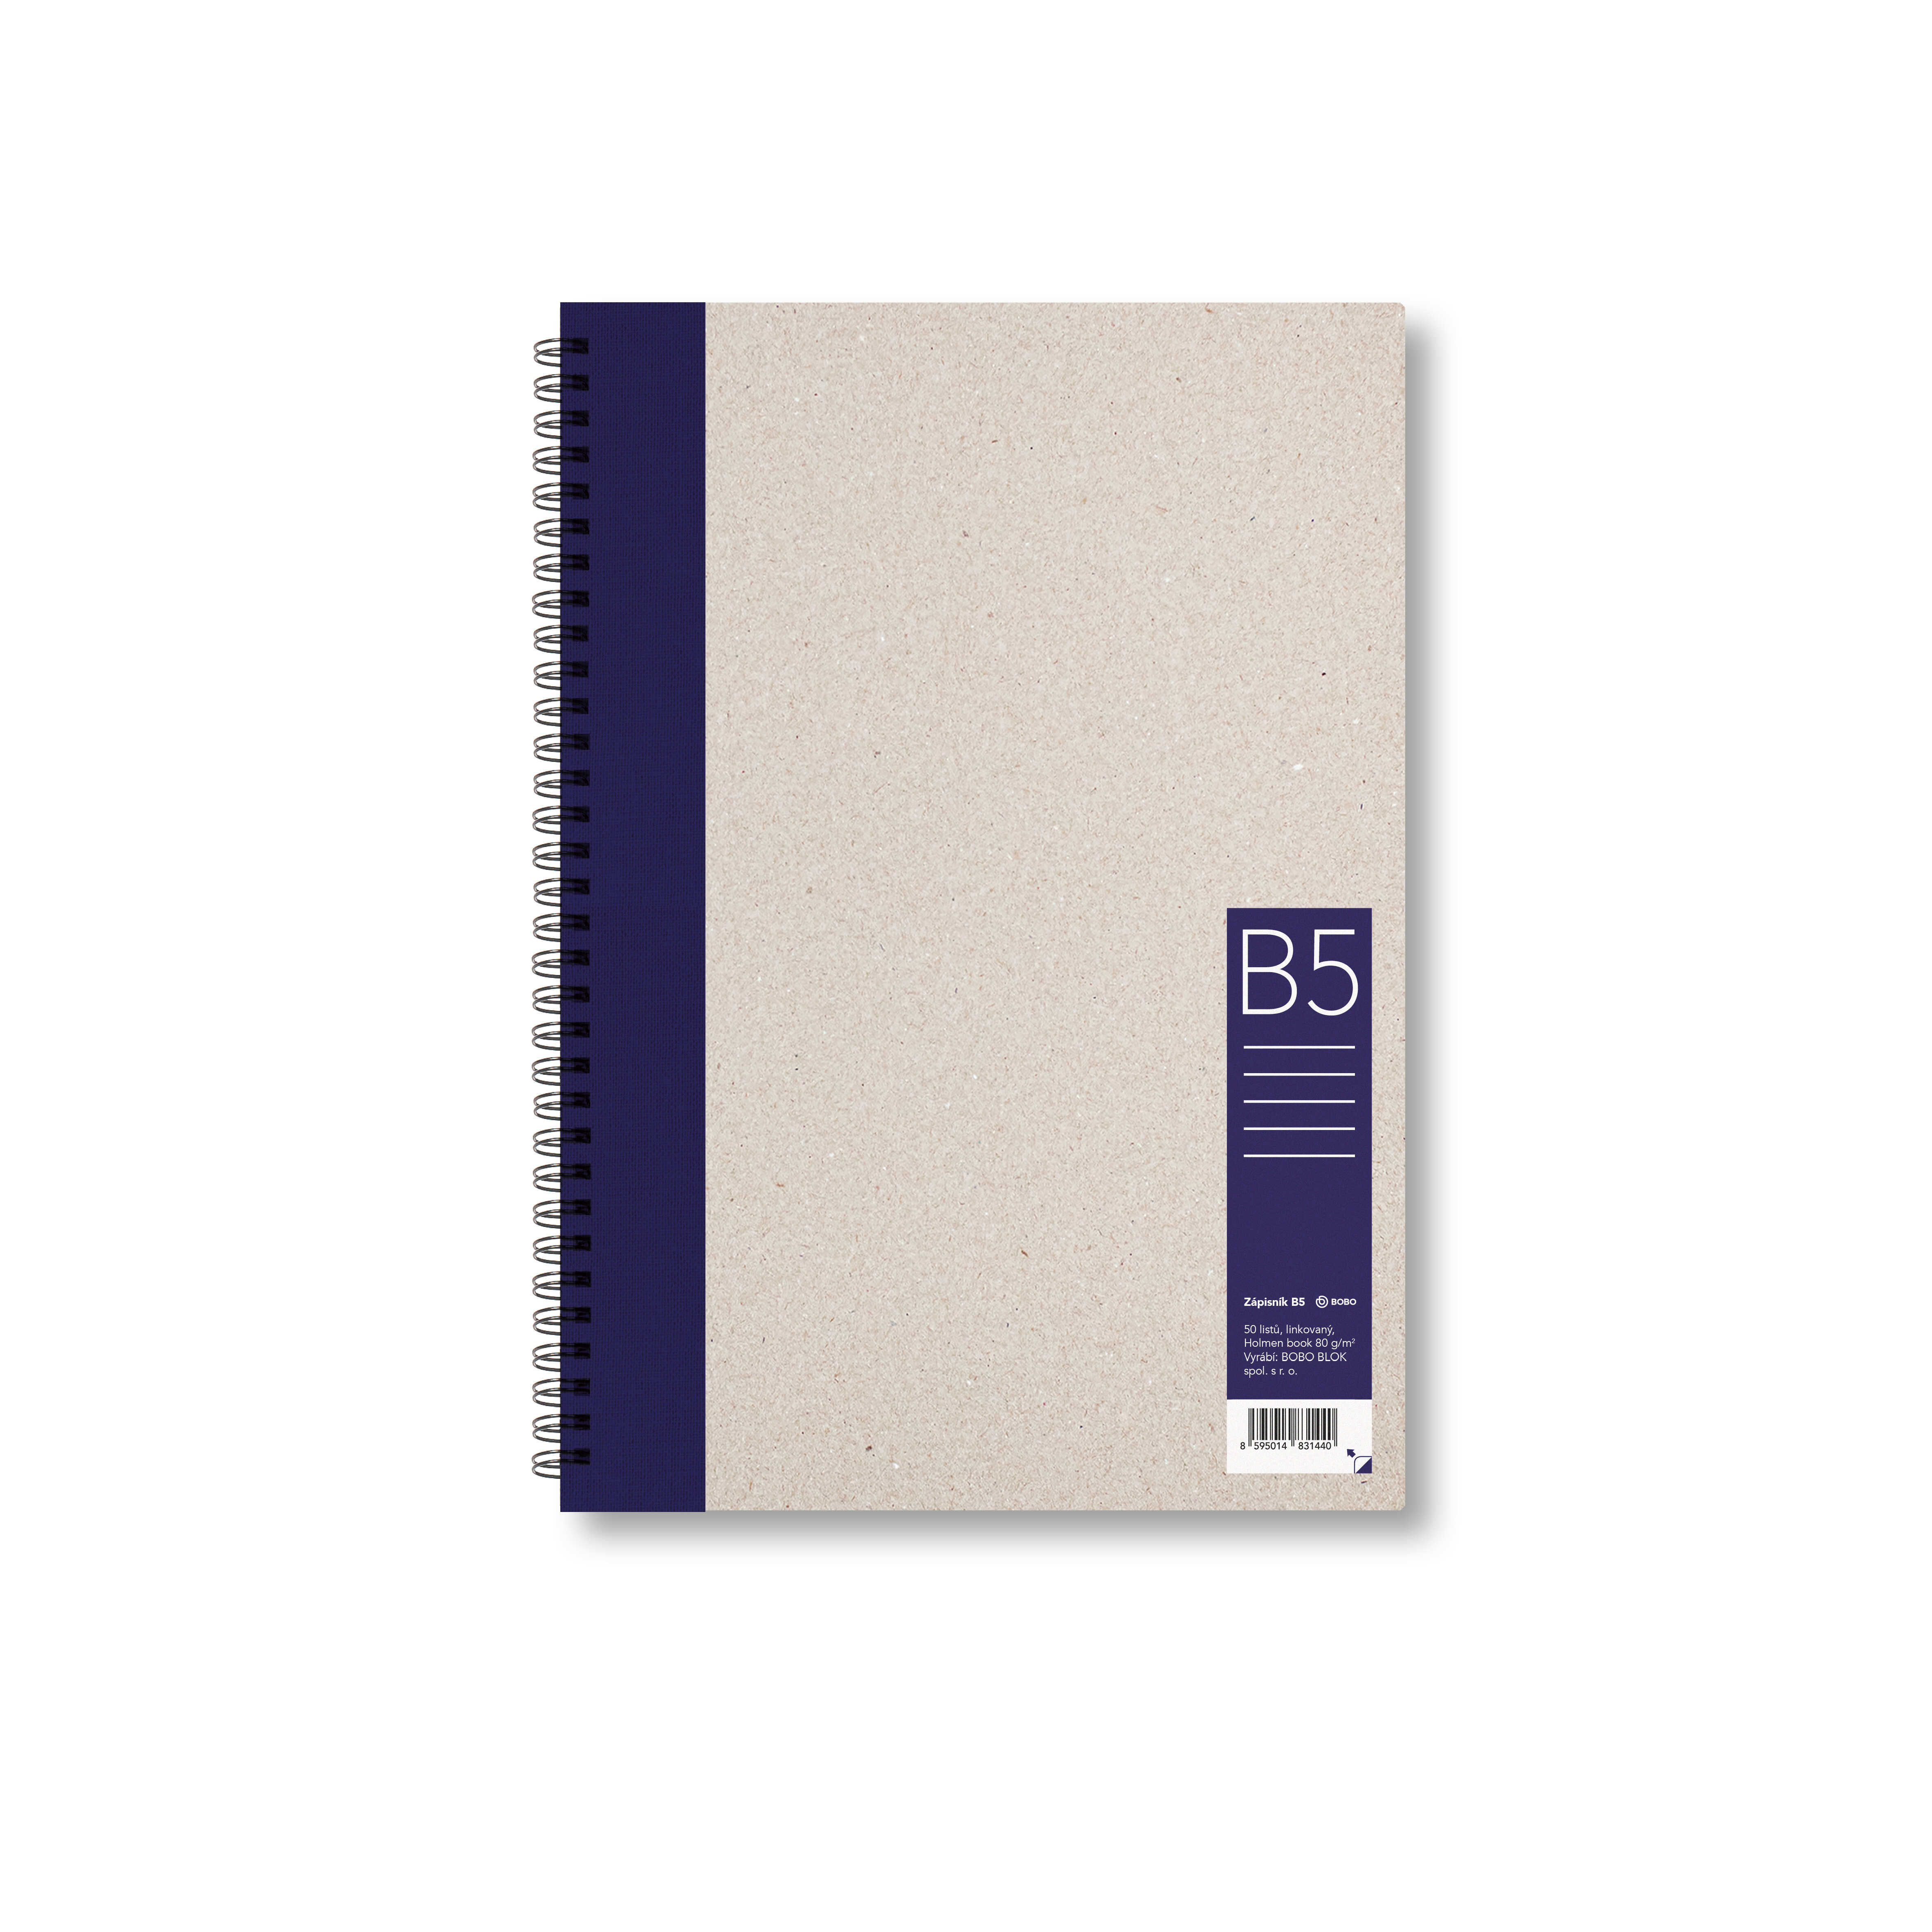 Zápisník Bobo B5, linkovaný, tmavě modrý